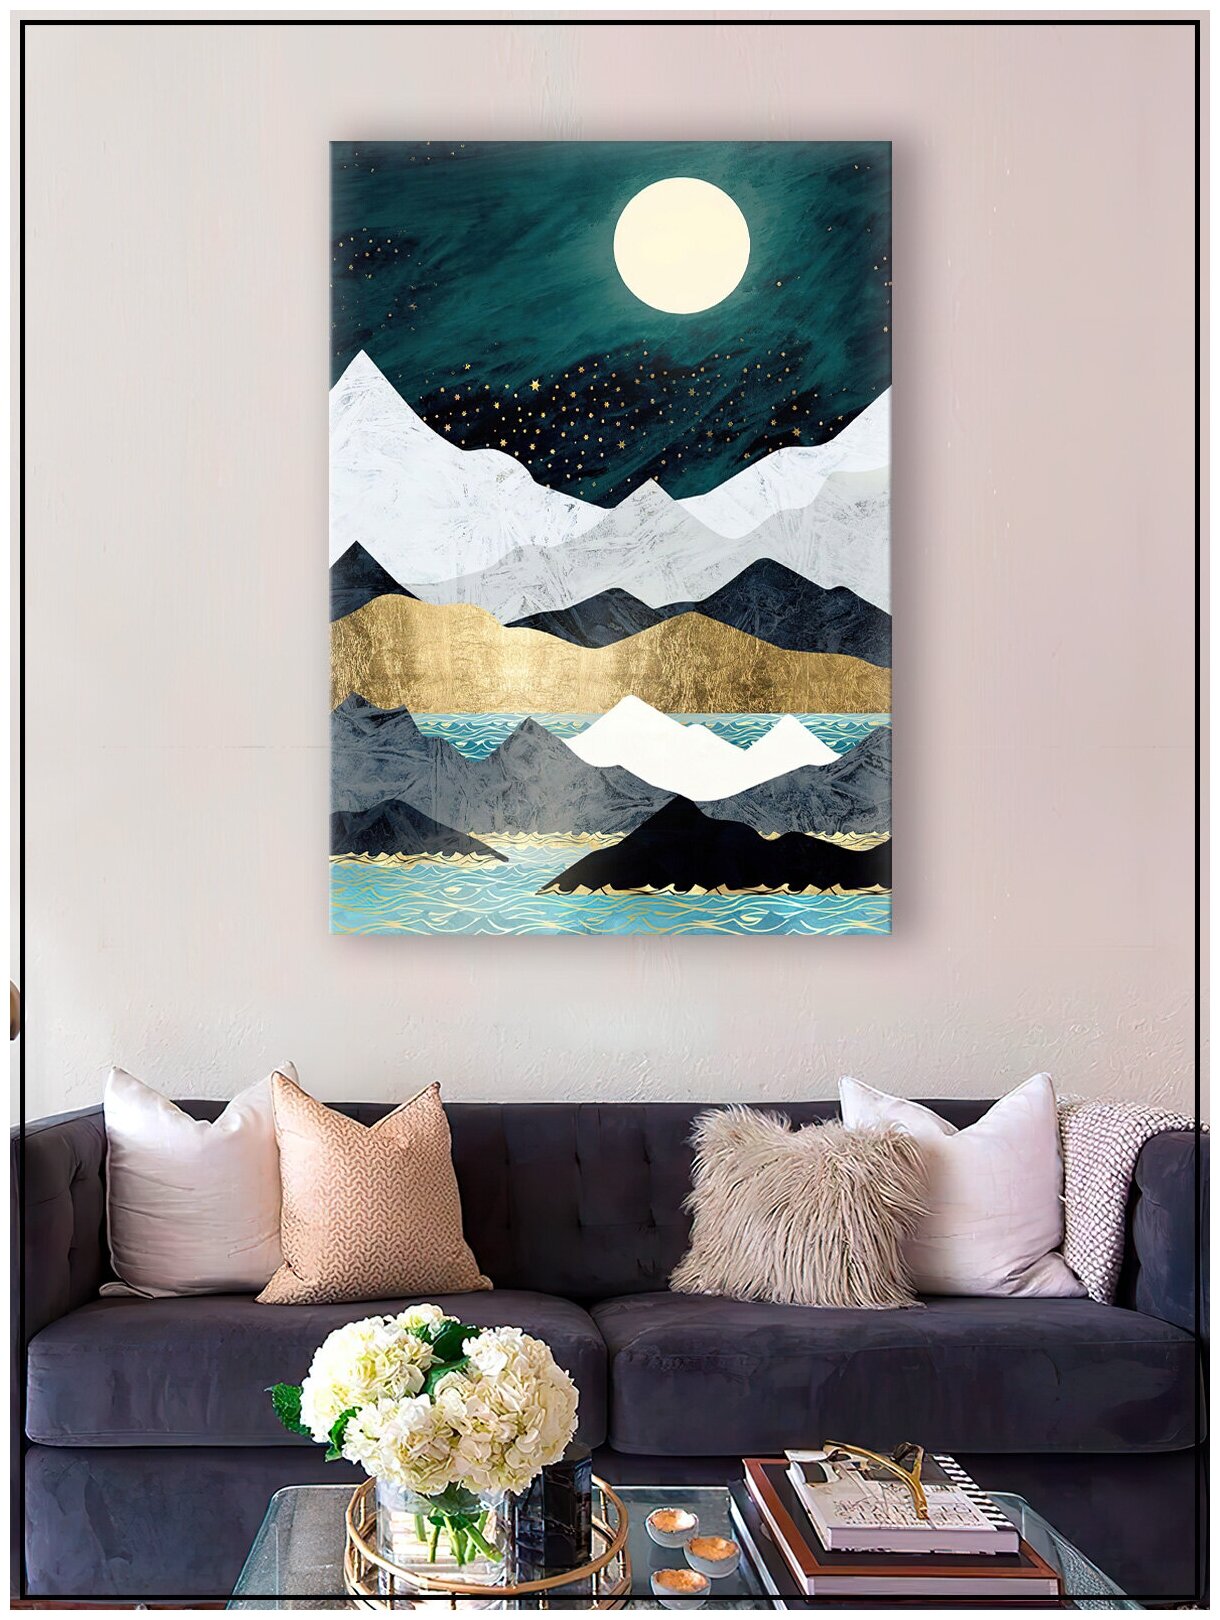 Картина для интерьера на натуральном хлопковом холсте "Полнолуние в горах", 30*40см, холст на подрамнике, картина в подарок для дома